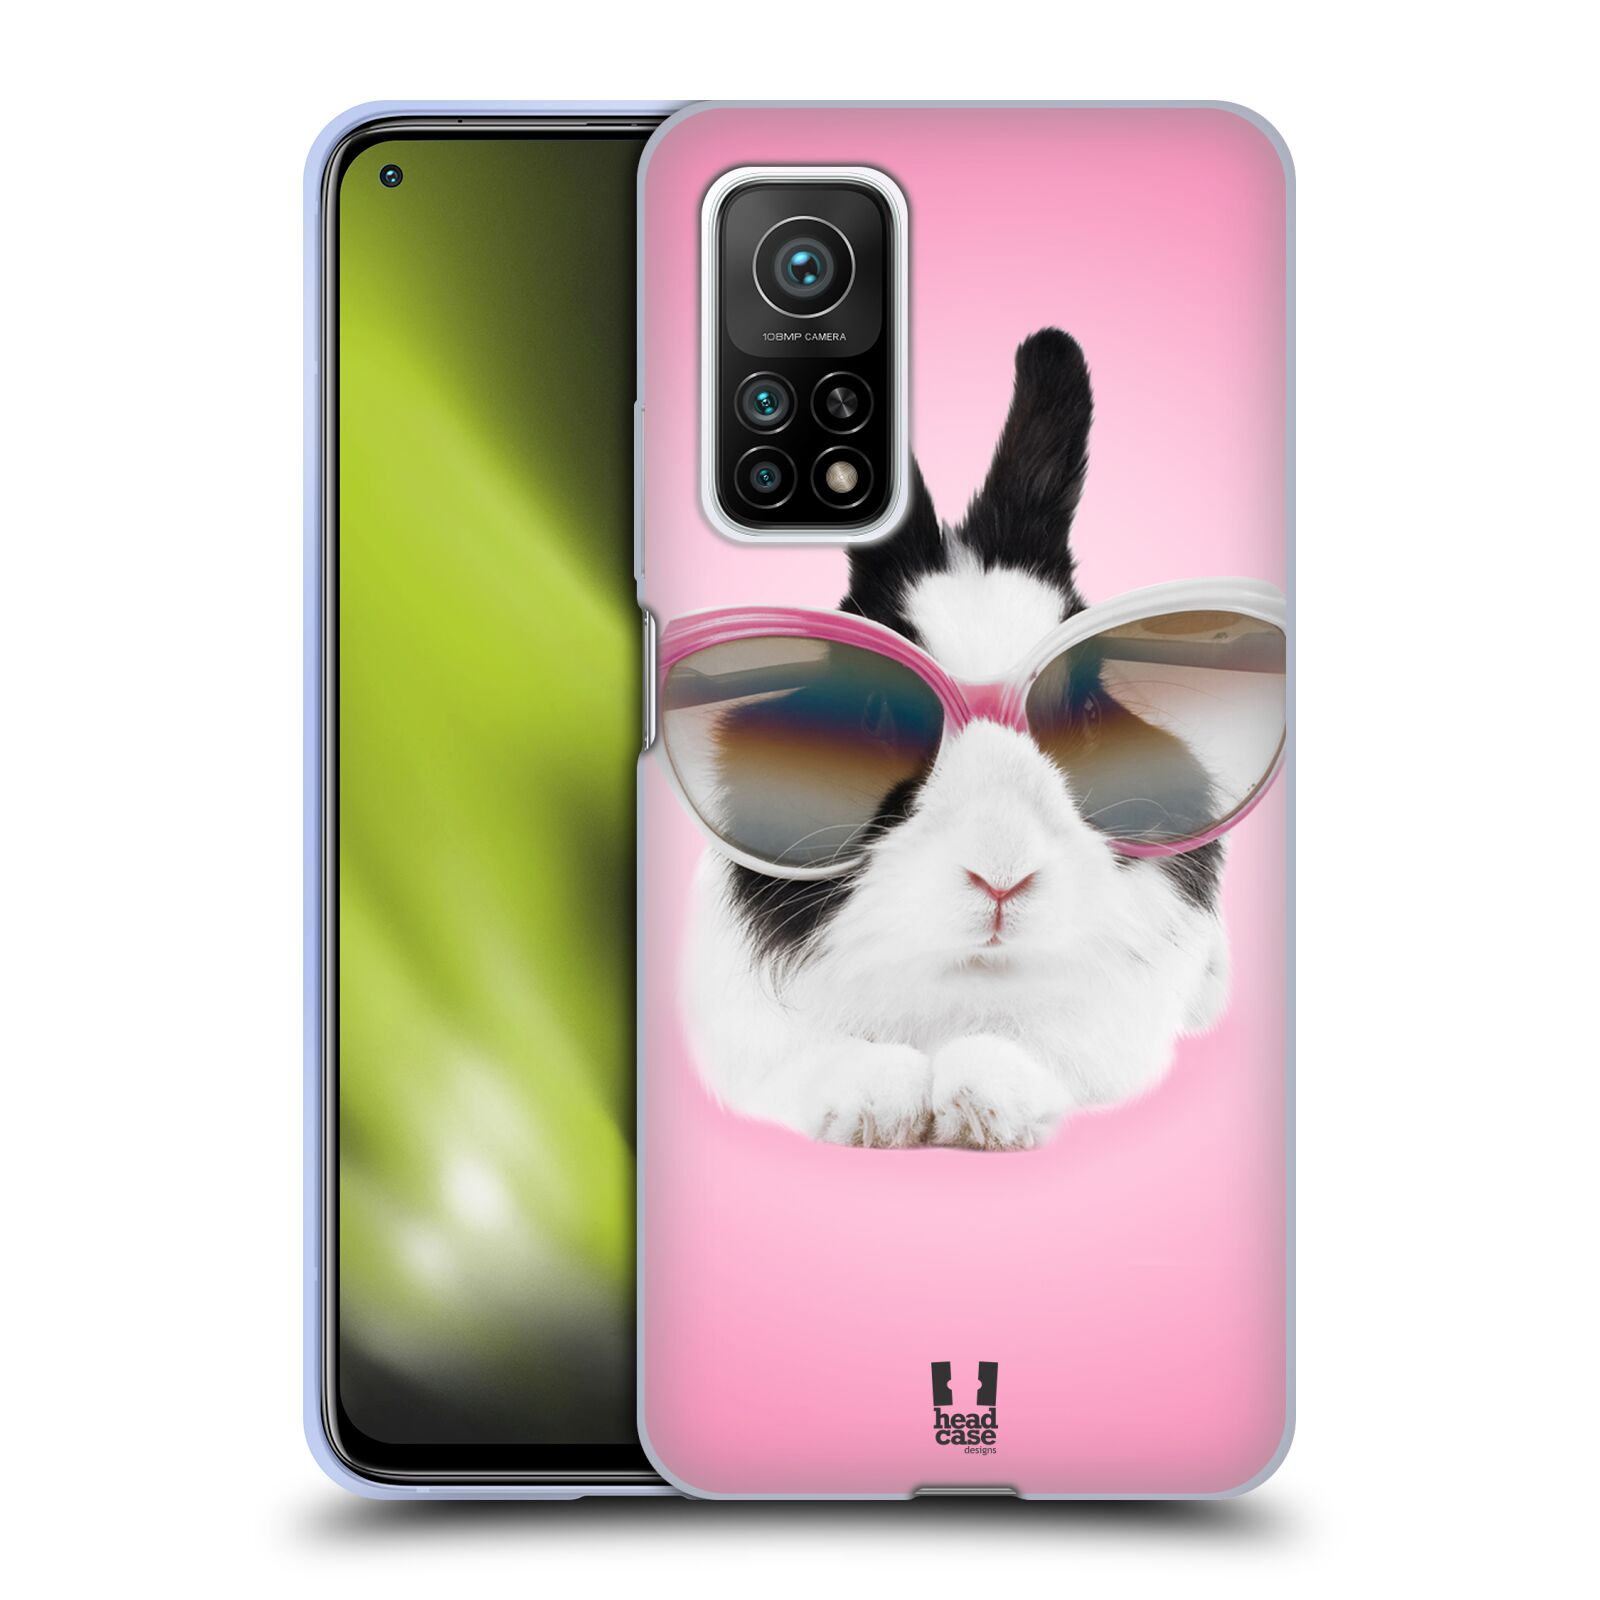 Plastový obal HEAD CASE na mobil Xiaomi Mi 10T a Mi 10T PRO vzor Legrační zvířátka roztomilý králíček s brýlemi růžová